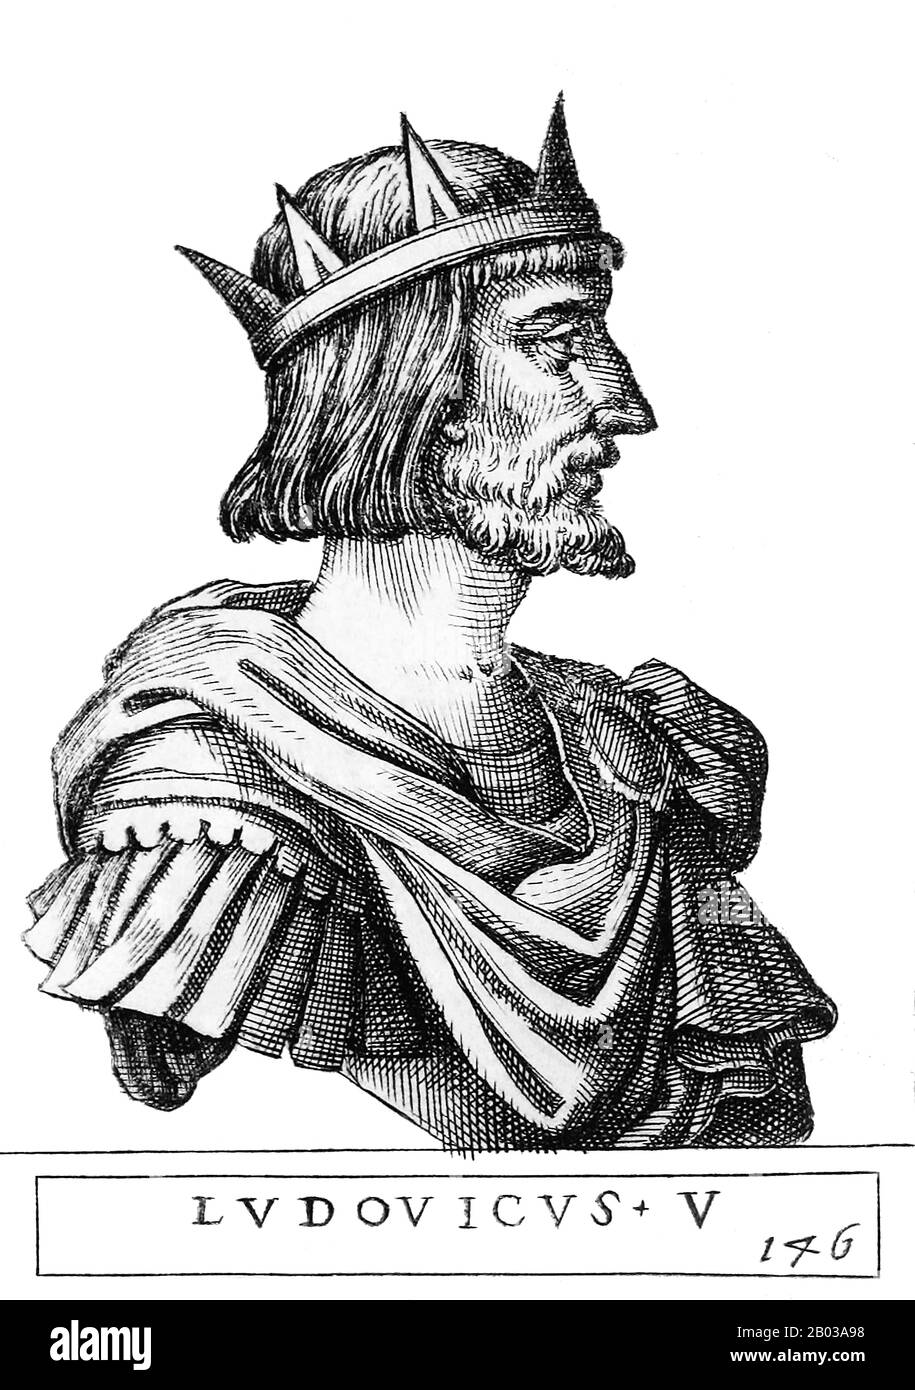 Luigi IV (1282-1347), noto anche come Luigi Bavarese, era figlio del duca Luigi II di Baviera superiore e Matilda, figlia del re Rudolf I. era di Casa Wittelsbach, ed era inizialmente un amico vicino al cugino asburgico Federico la Fiera, ma più tardi si gettarono e si scontrarono violentemente. Divenne Duca di Baviera nel 1301 accanto al fratello Rudolf i, ma divenne unico sovrano nel 1317. Quando l'imperatore Enrico VII morì nel 1313, due re furono eletti per succederlo, uno essendo Luigi stesso e l'altro suo cugino Federico. Furono coronati rapidamente e poi si combatterono in una sanguinosa guerra per Foto Stock